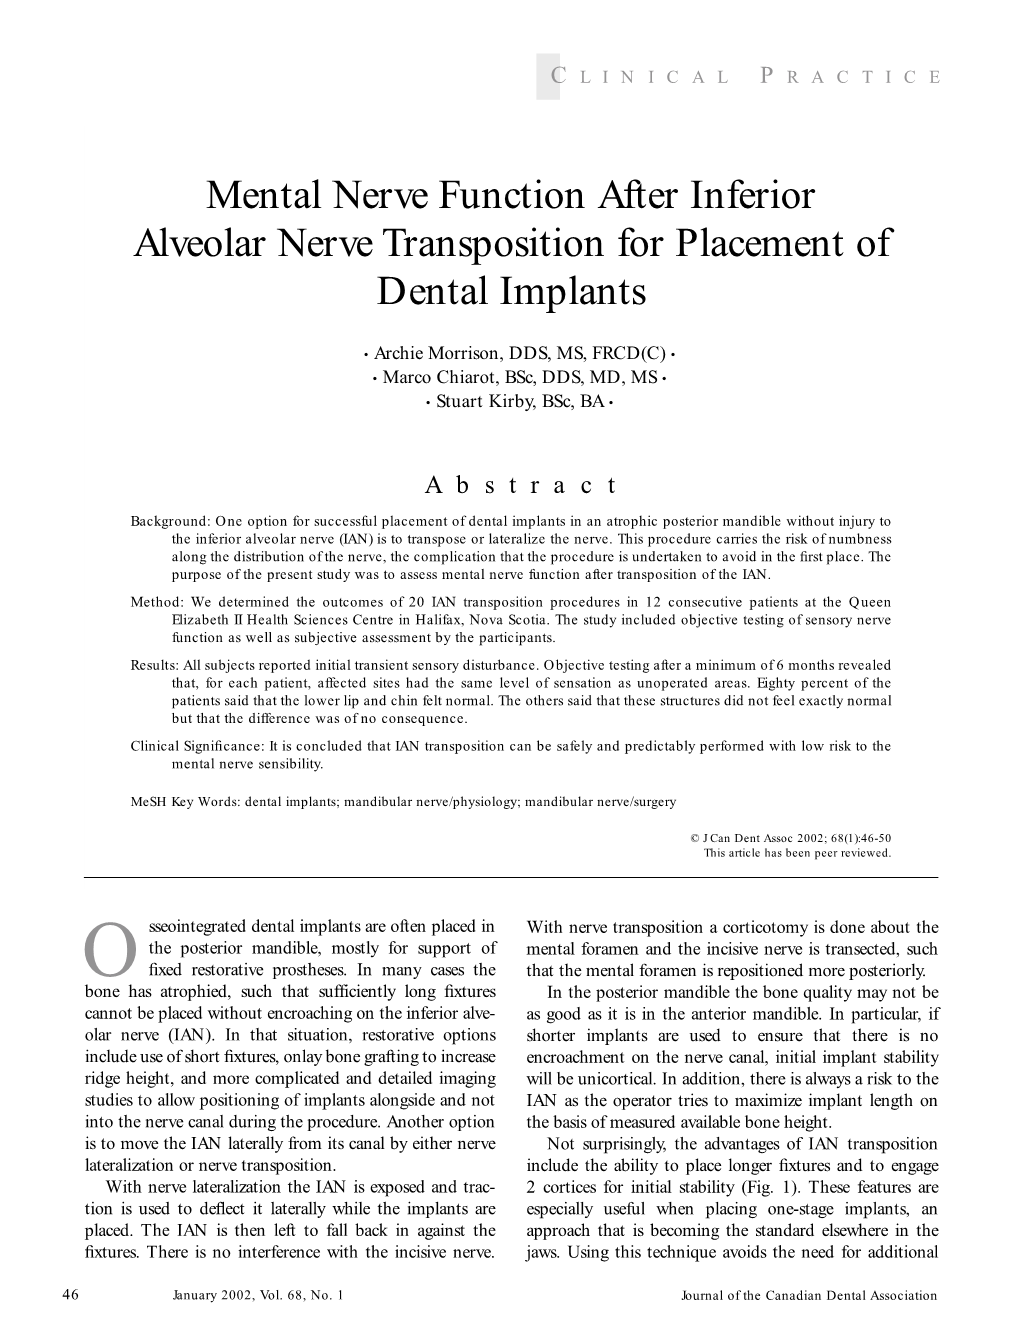 Mental Nerve Function After Inferior Alveolar Nerve Transposition for Placement of Dental Implants